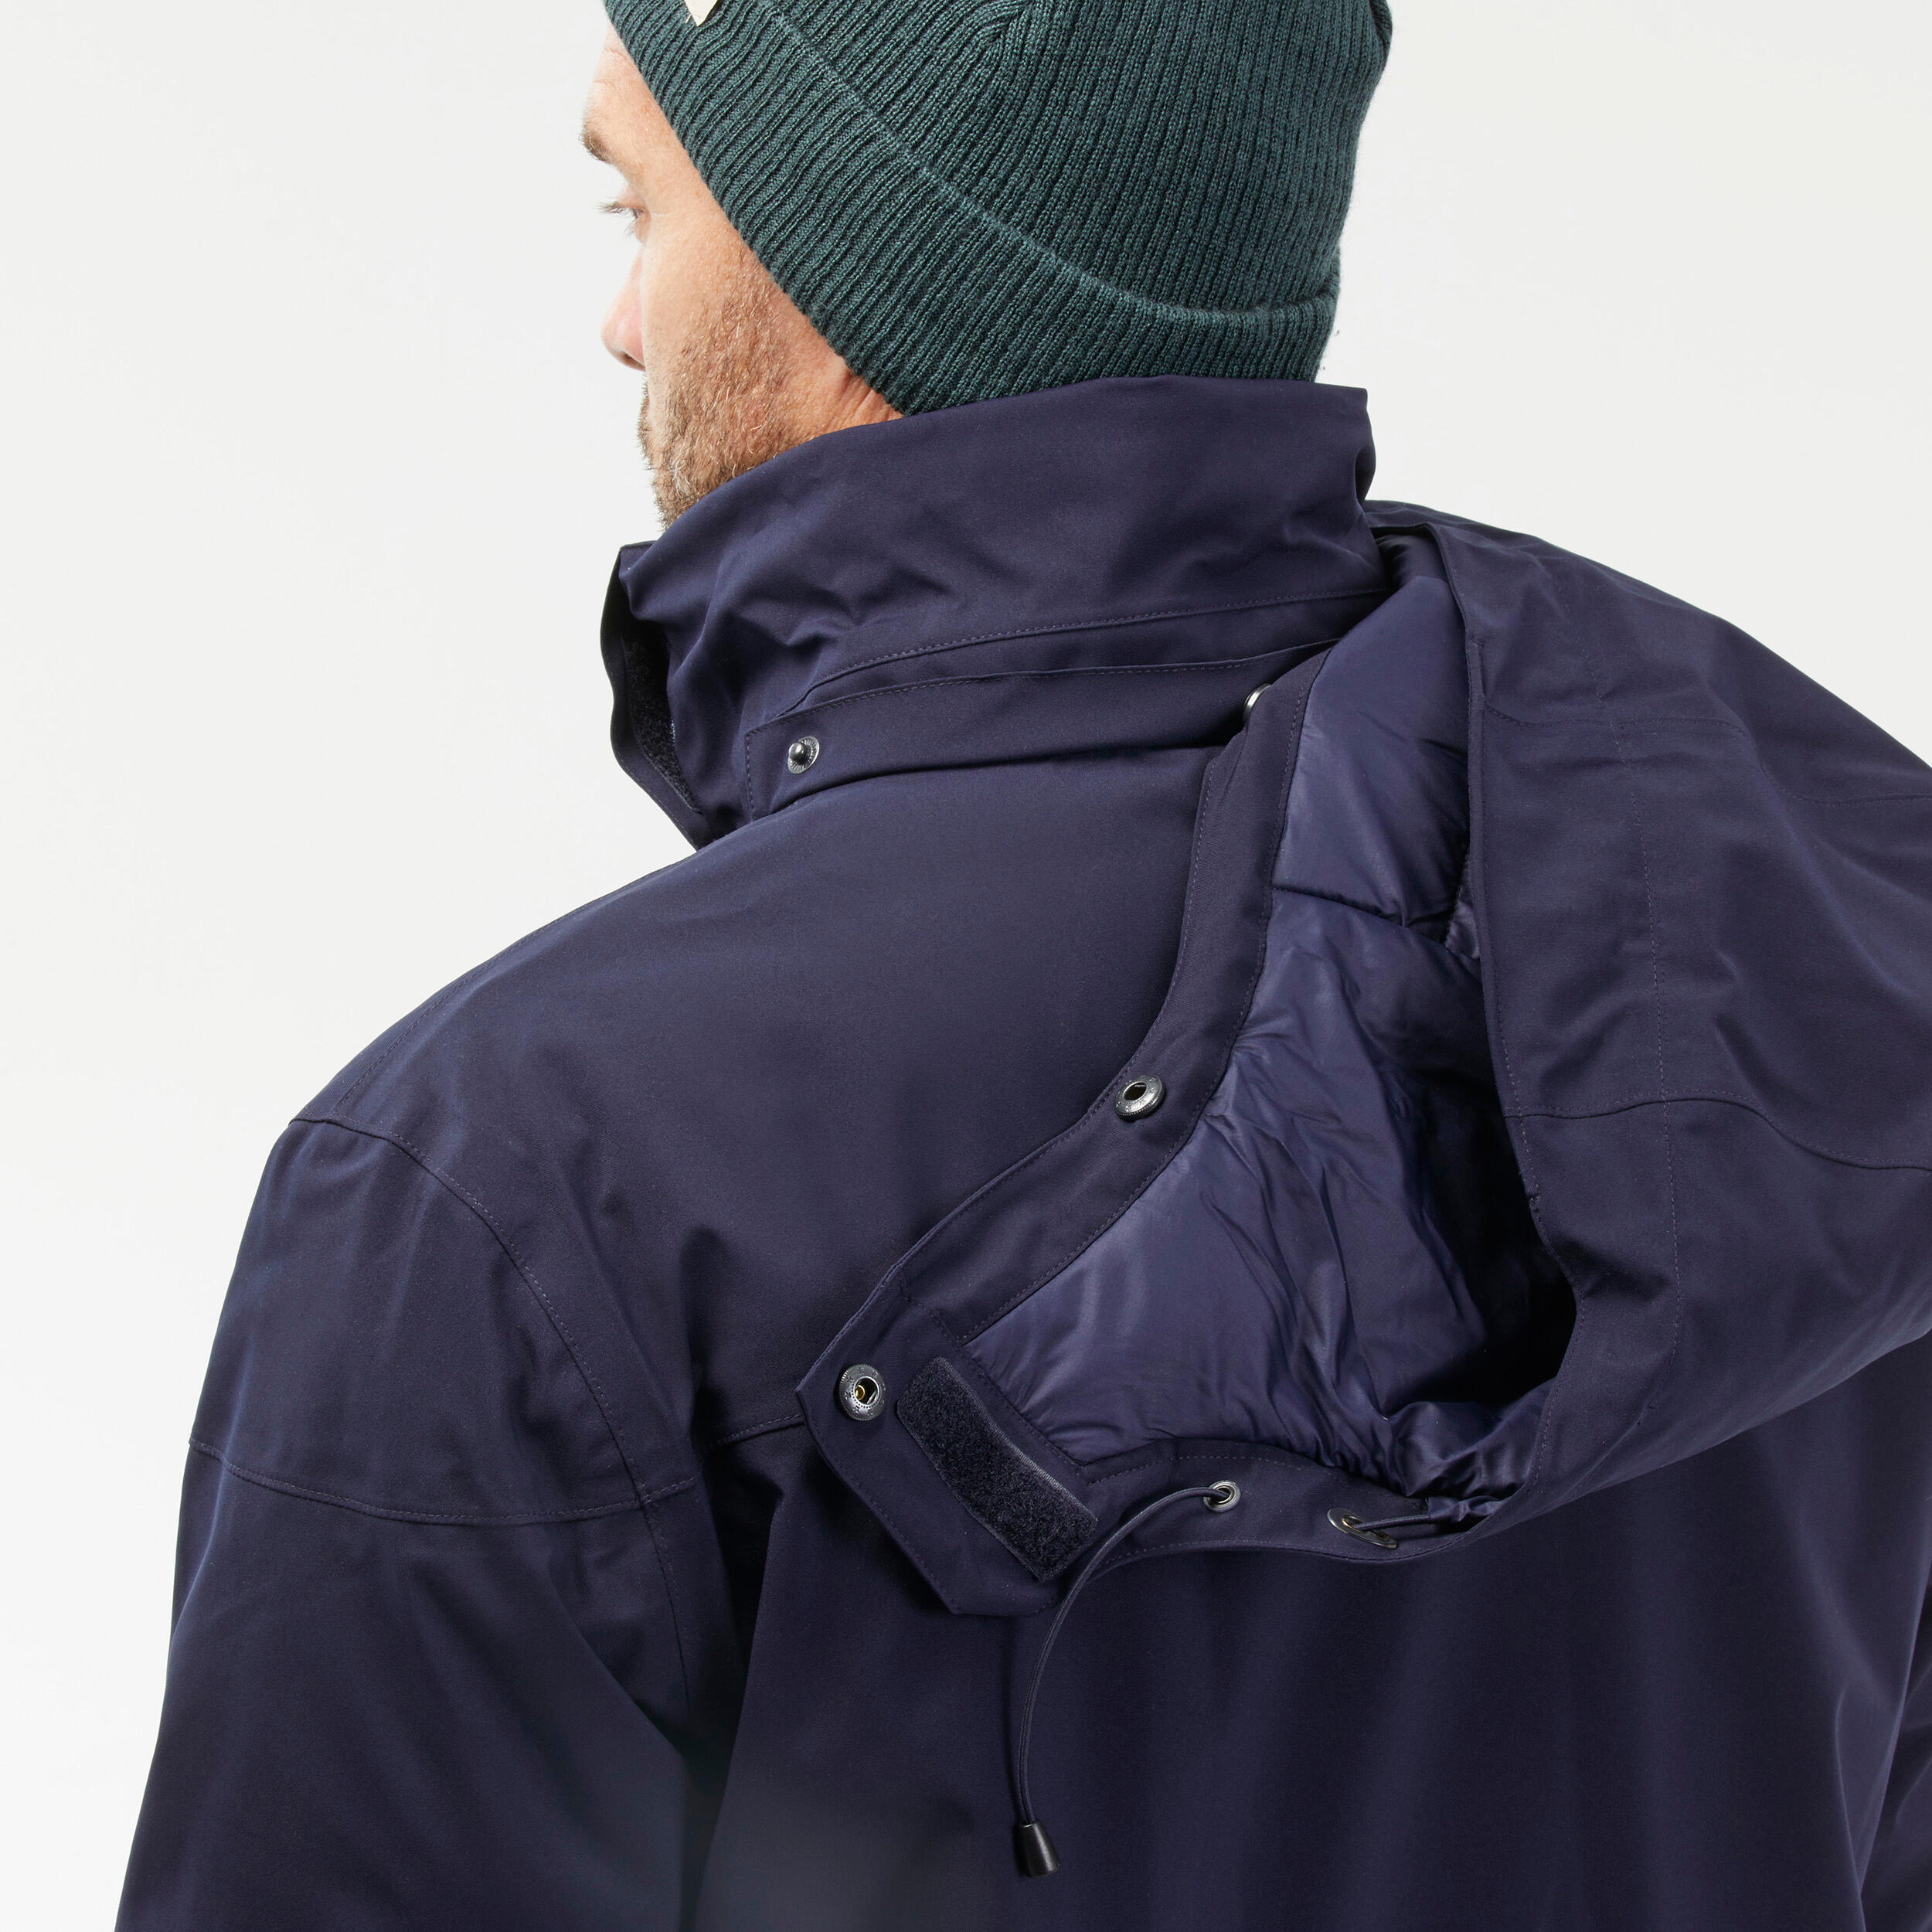 Men’s Waterproof Winter Jacket - SH 500 Blue - Asphalt blue - Quechua ...